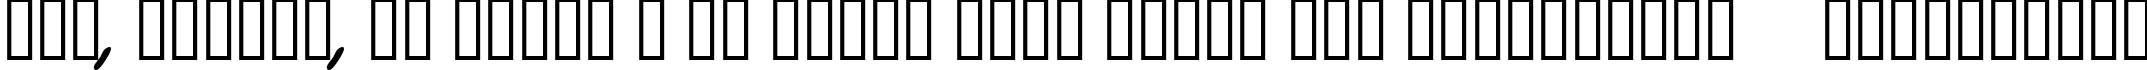 Пример написания шрифтом BottleRocket BB Bold текста на украинском